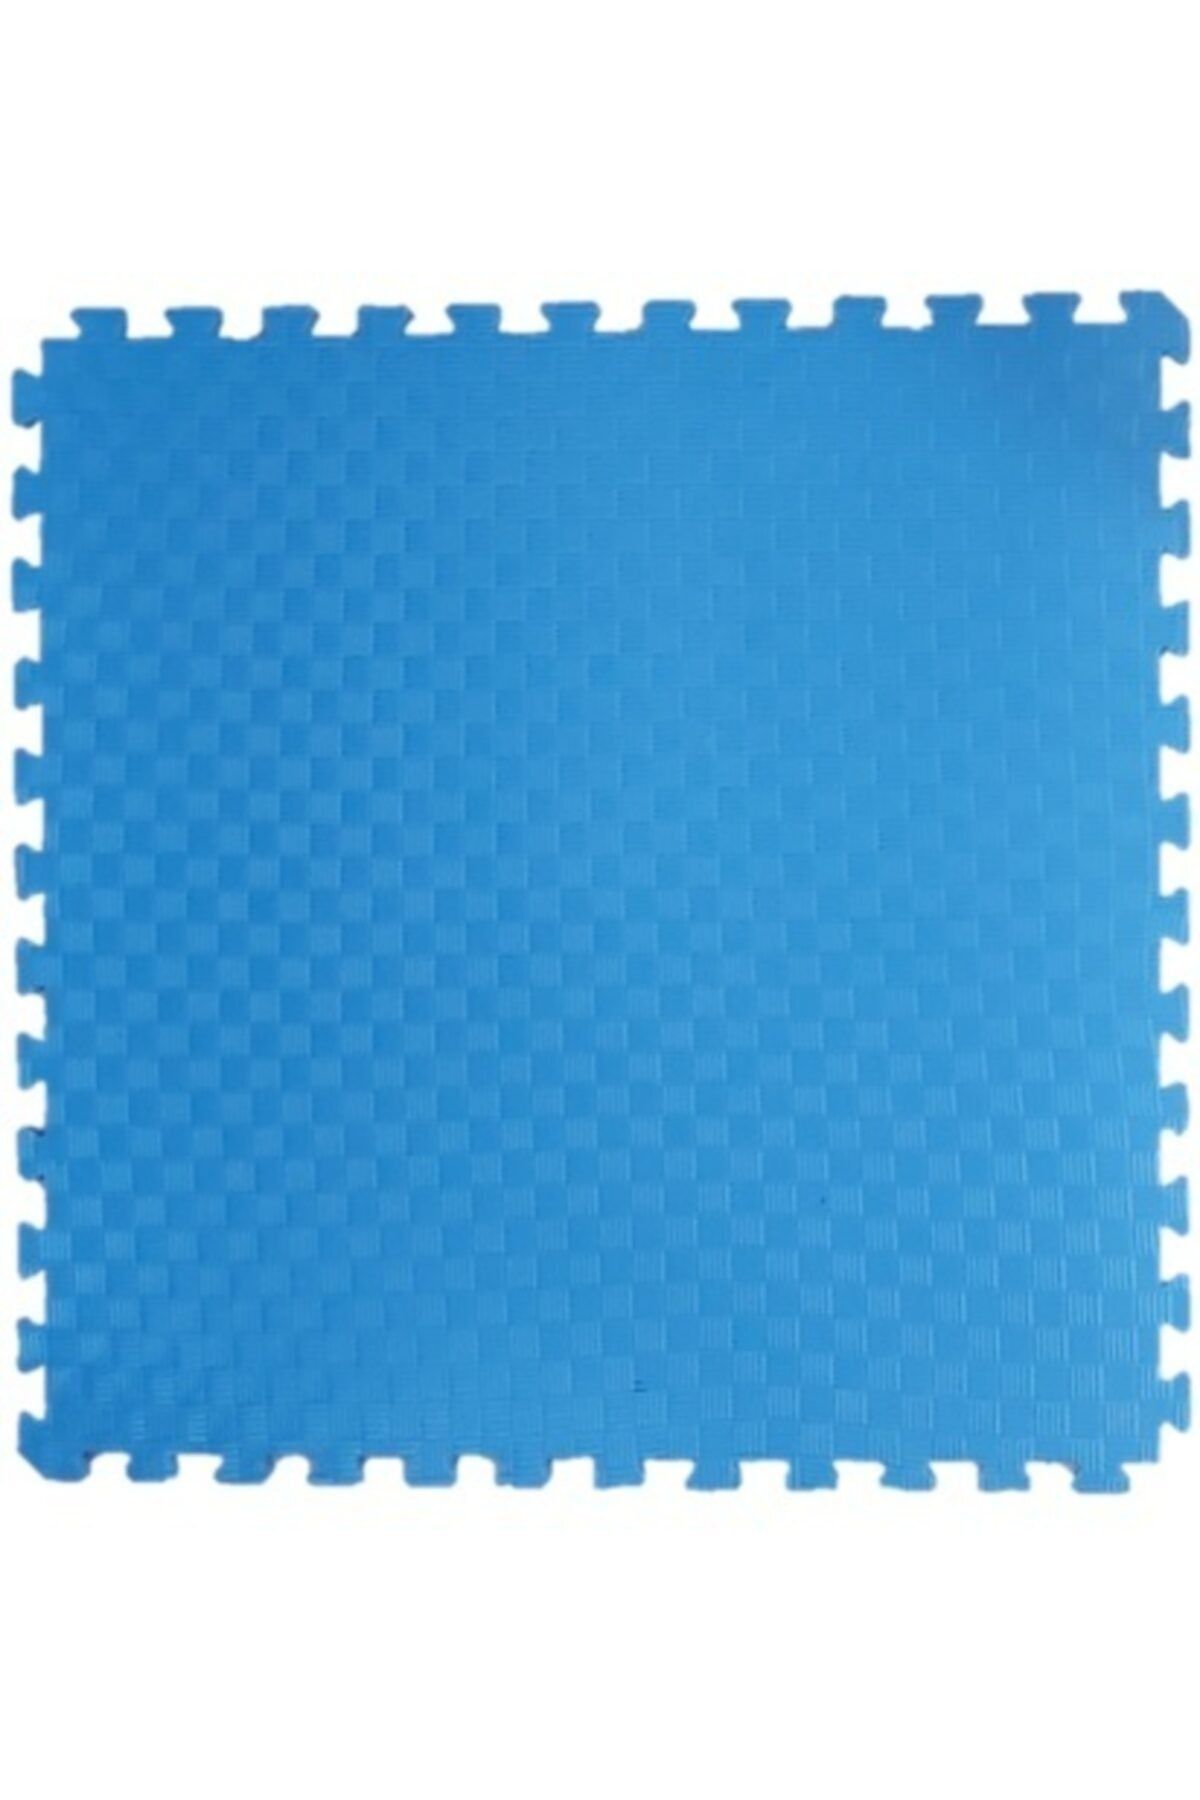 Genel Markalar 100x100 Cm 13 Mm Kalınlığında Iyi Kalite Tatami Yer Minderi Mavi